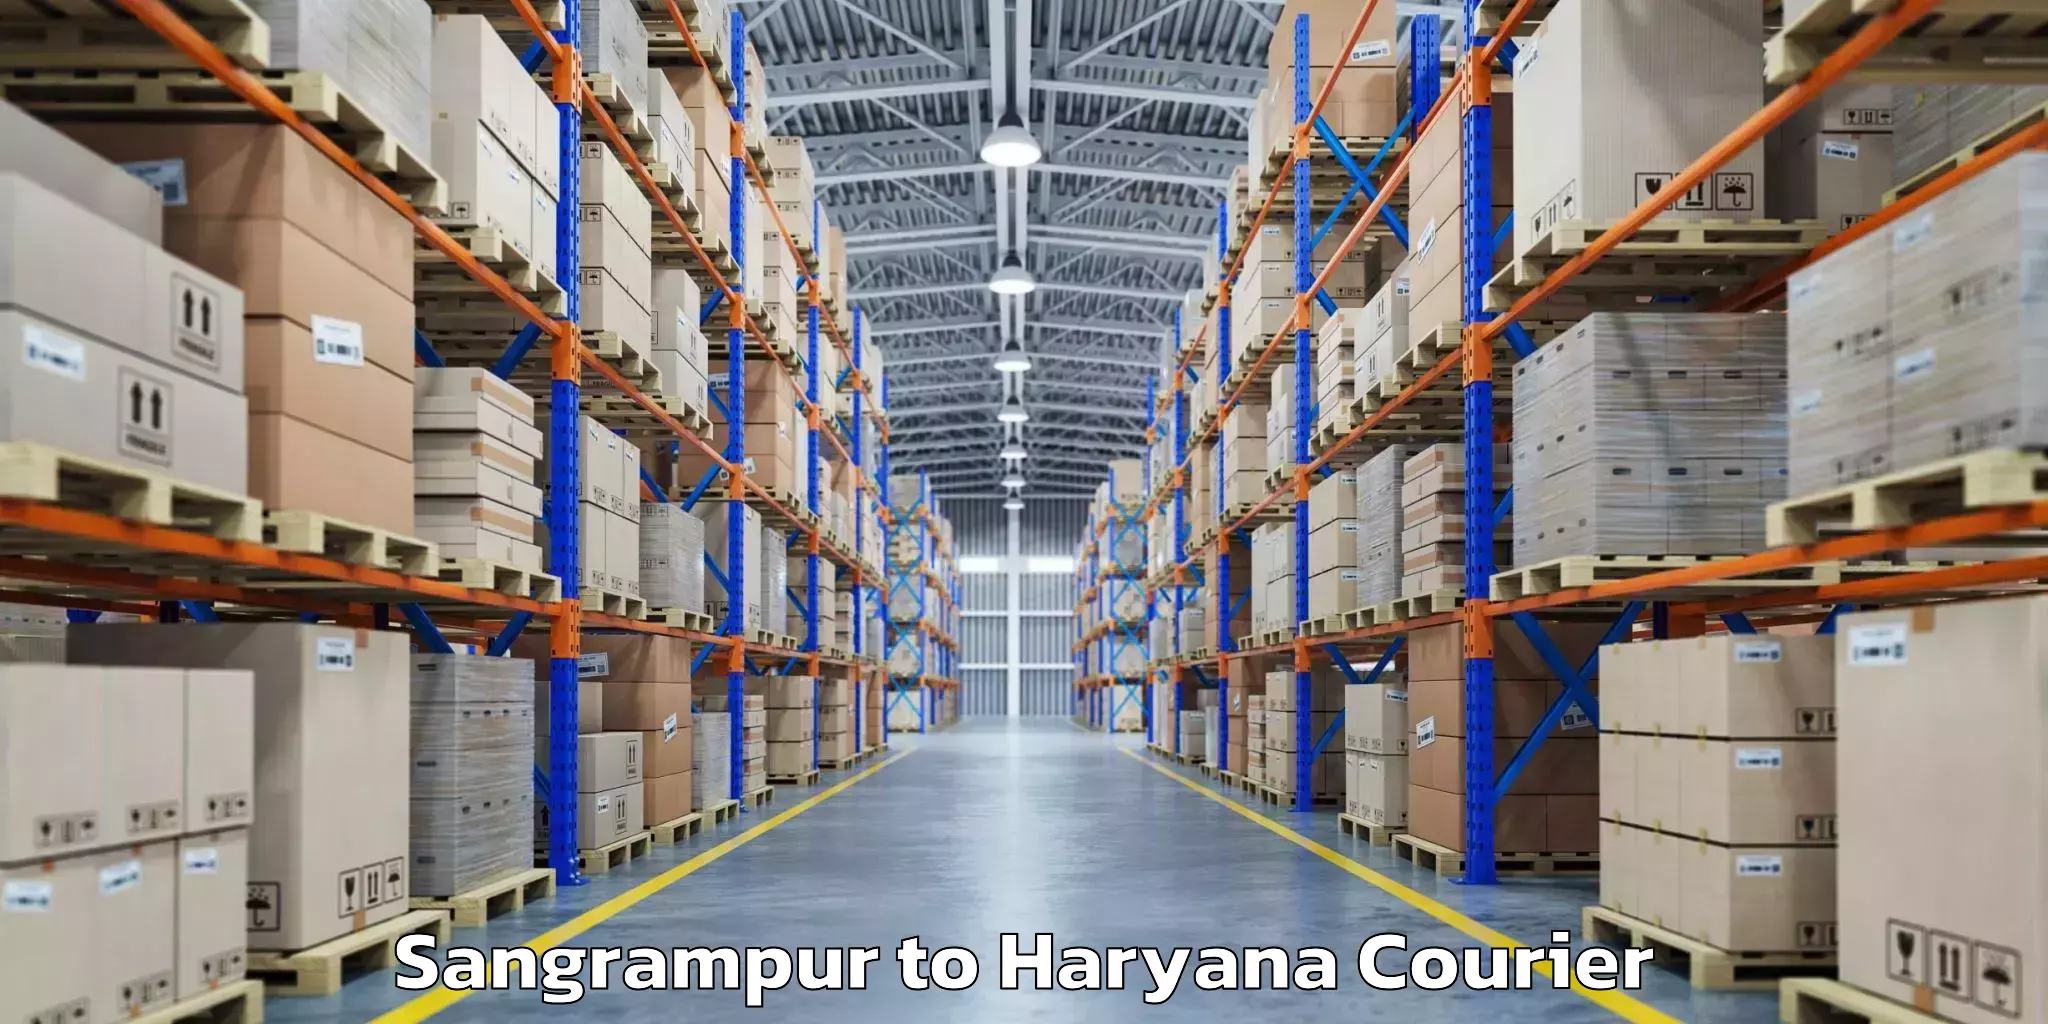 Baggage shipping experts Sangrampur to Loharu